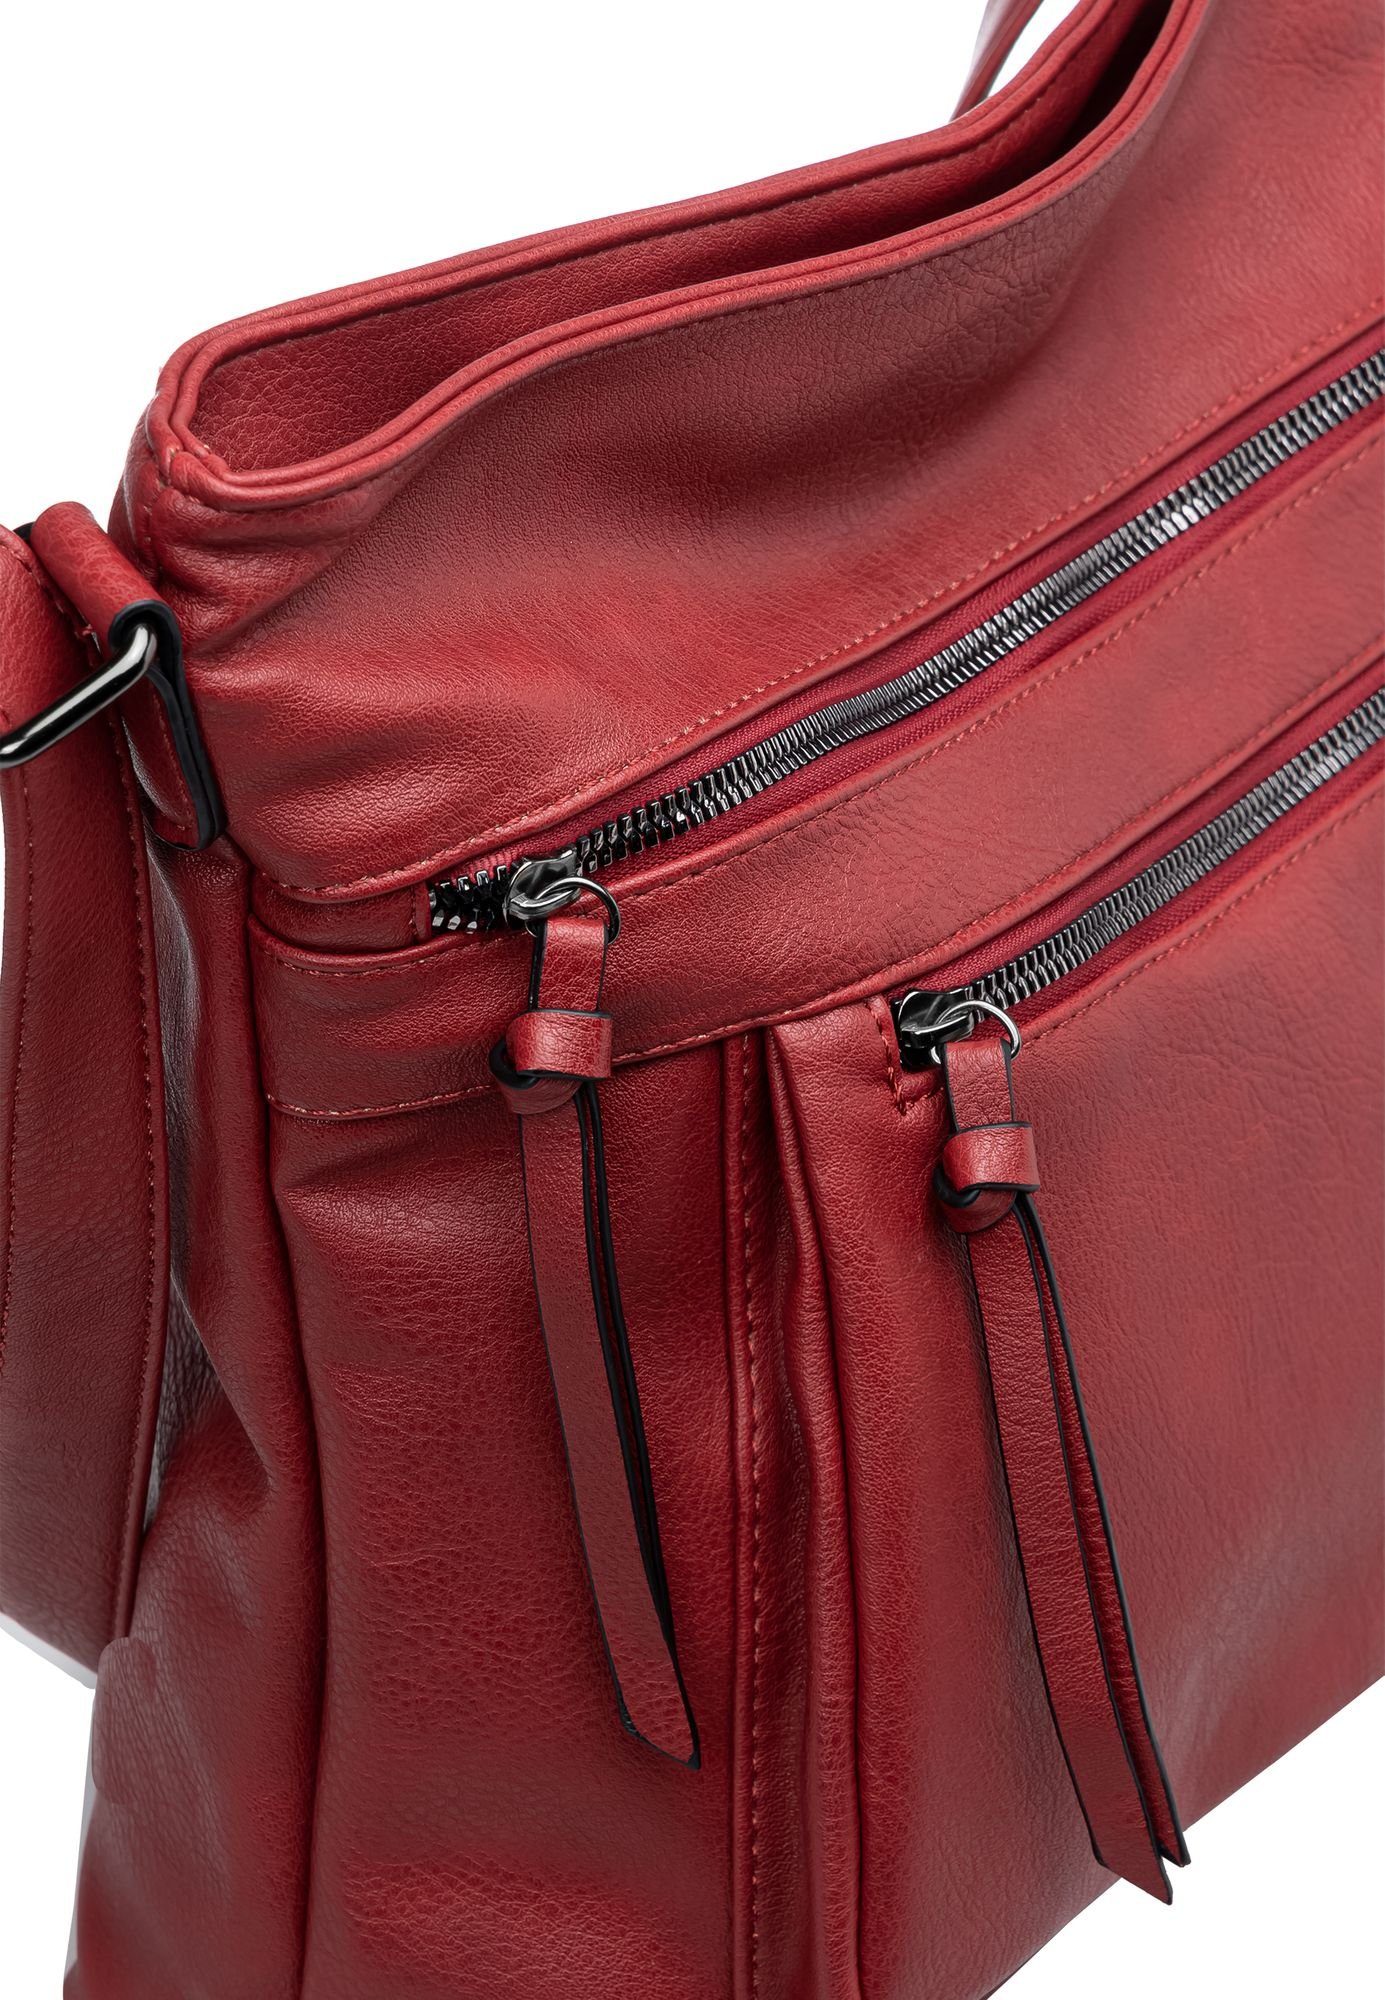 Damen Umhängetasche Crossbody TS1070 Caspar mittelgroße Bag Umhängetasche sportlich elegante rot